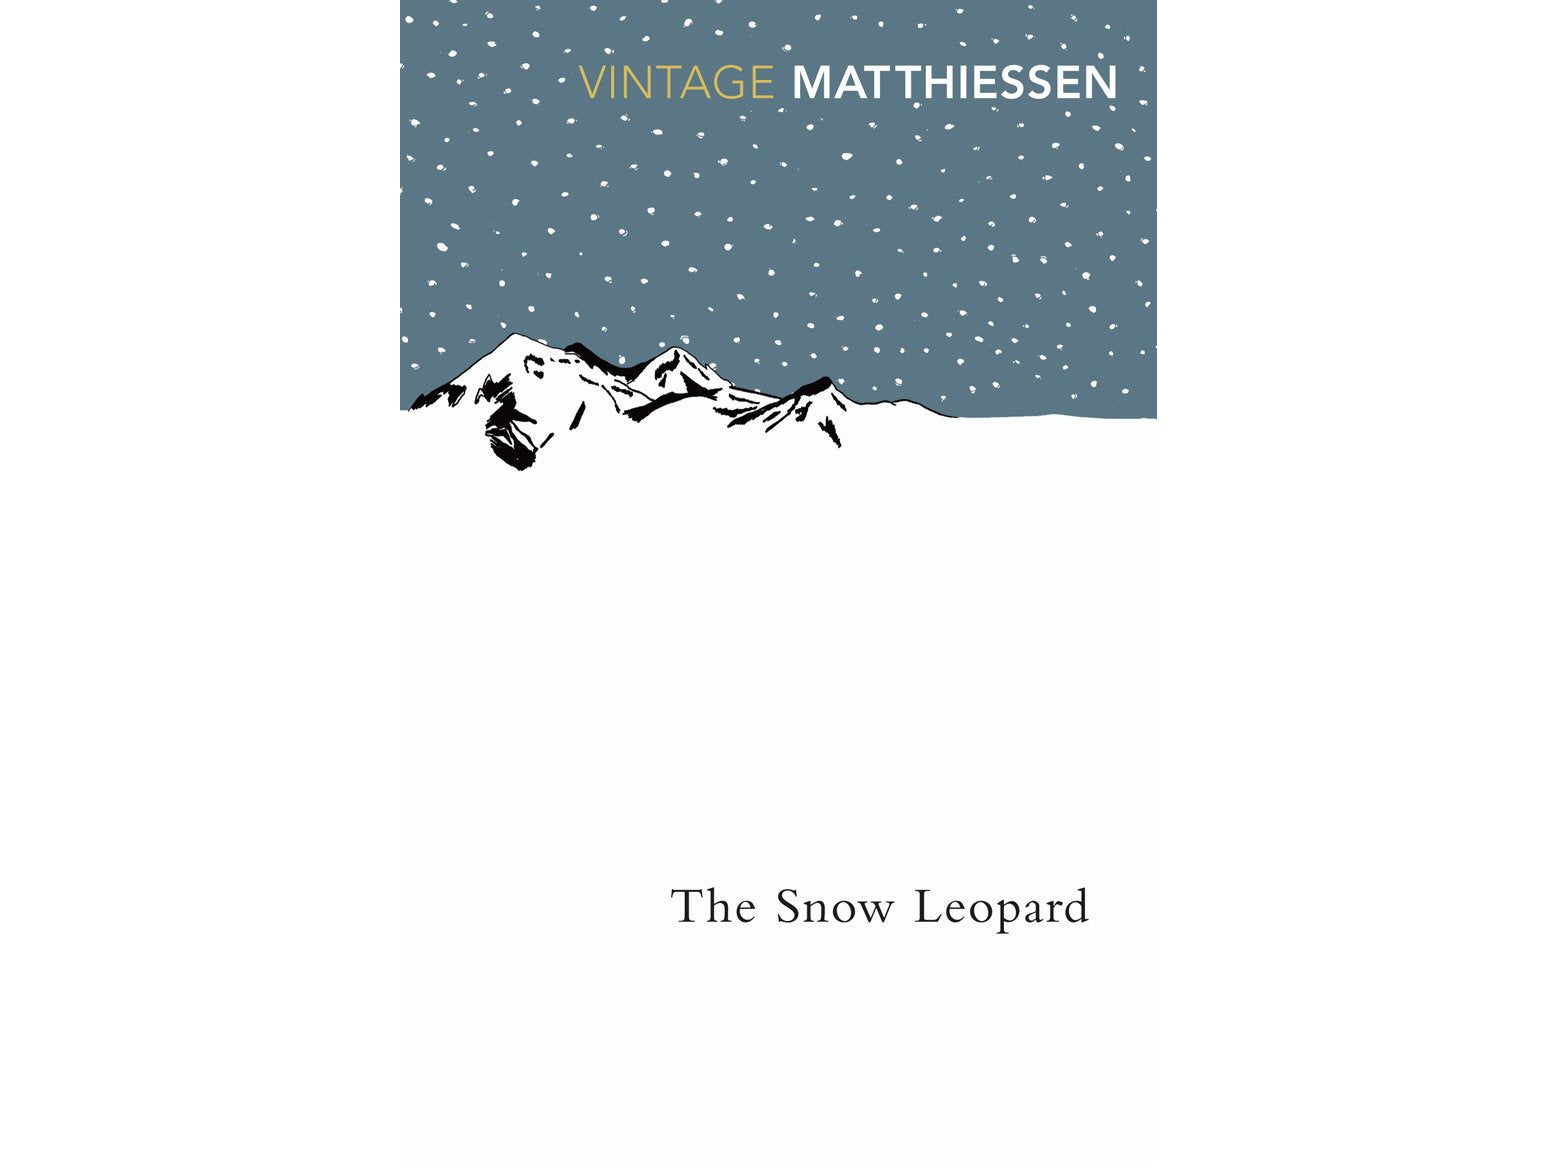 The snow leopard- Peter matthiessen.jpeg